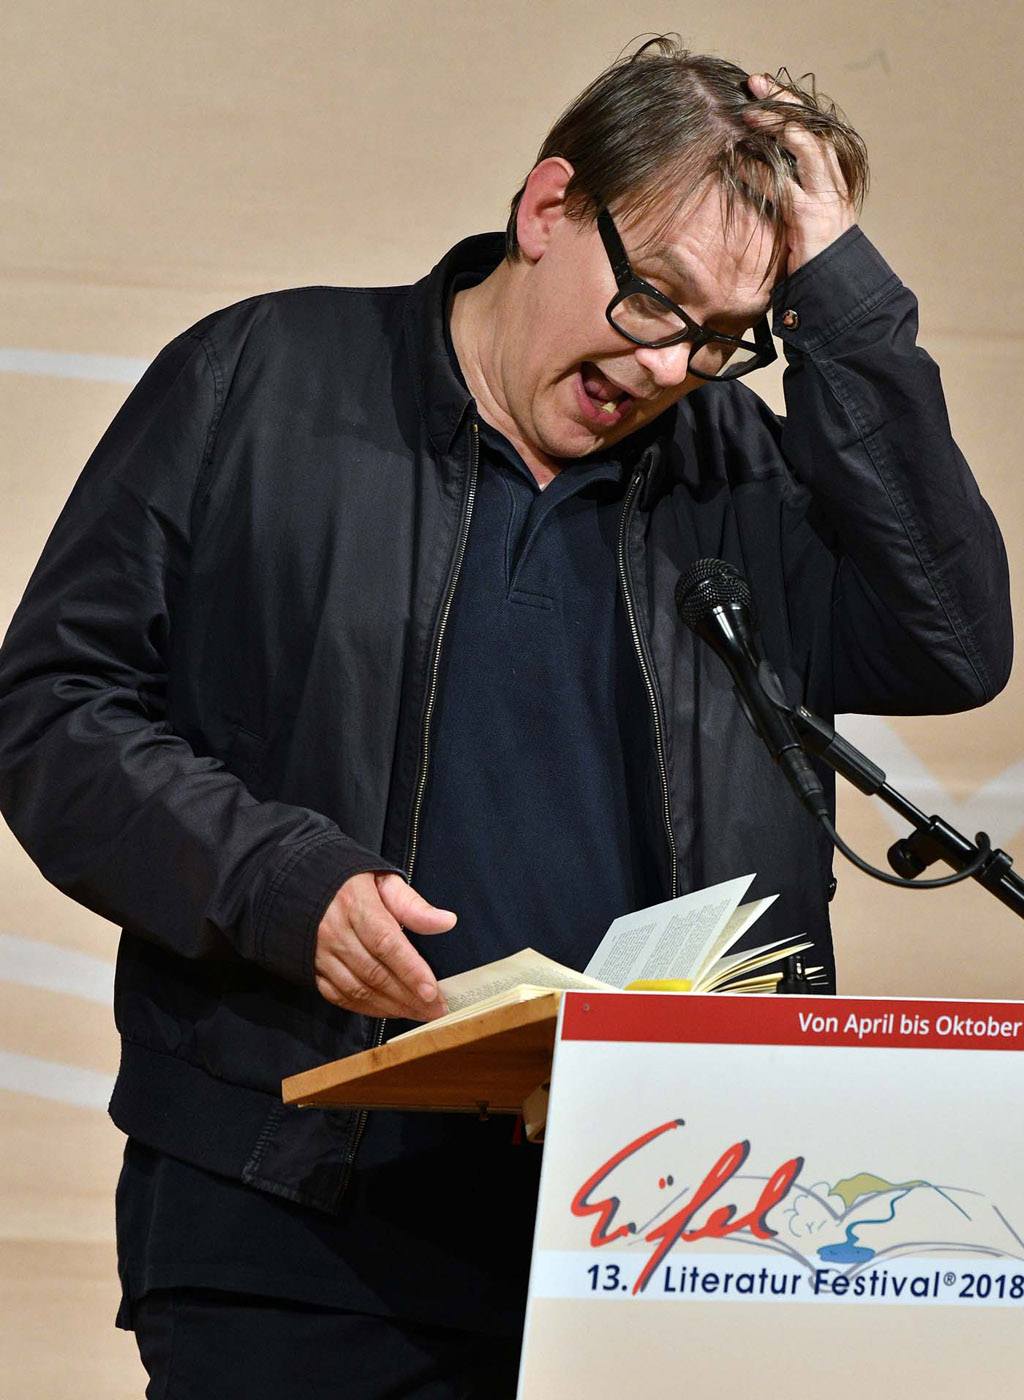 Sven Regener am 8. Mai 2018 in Wittlich